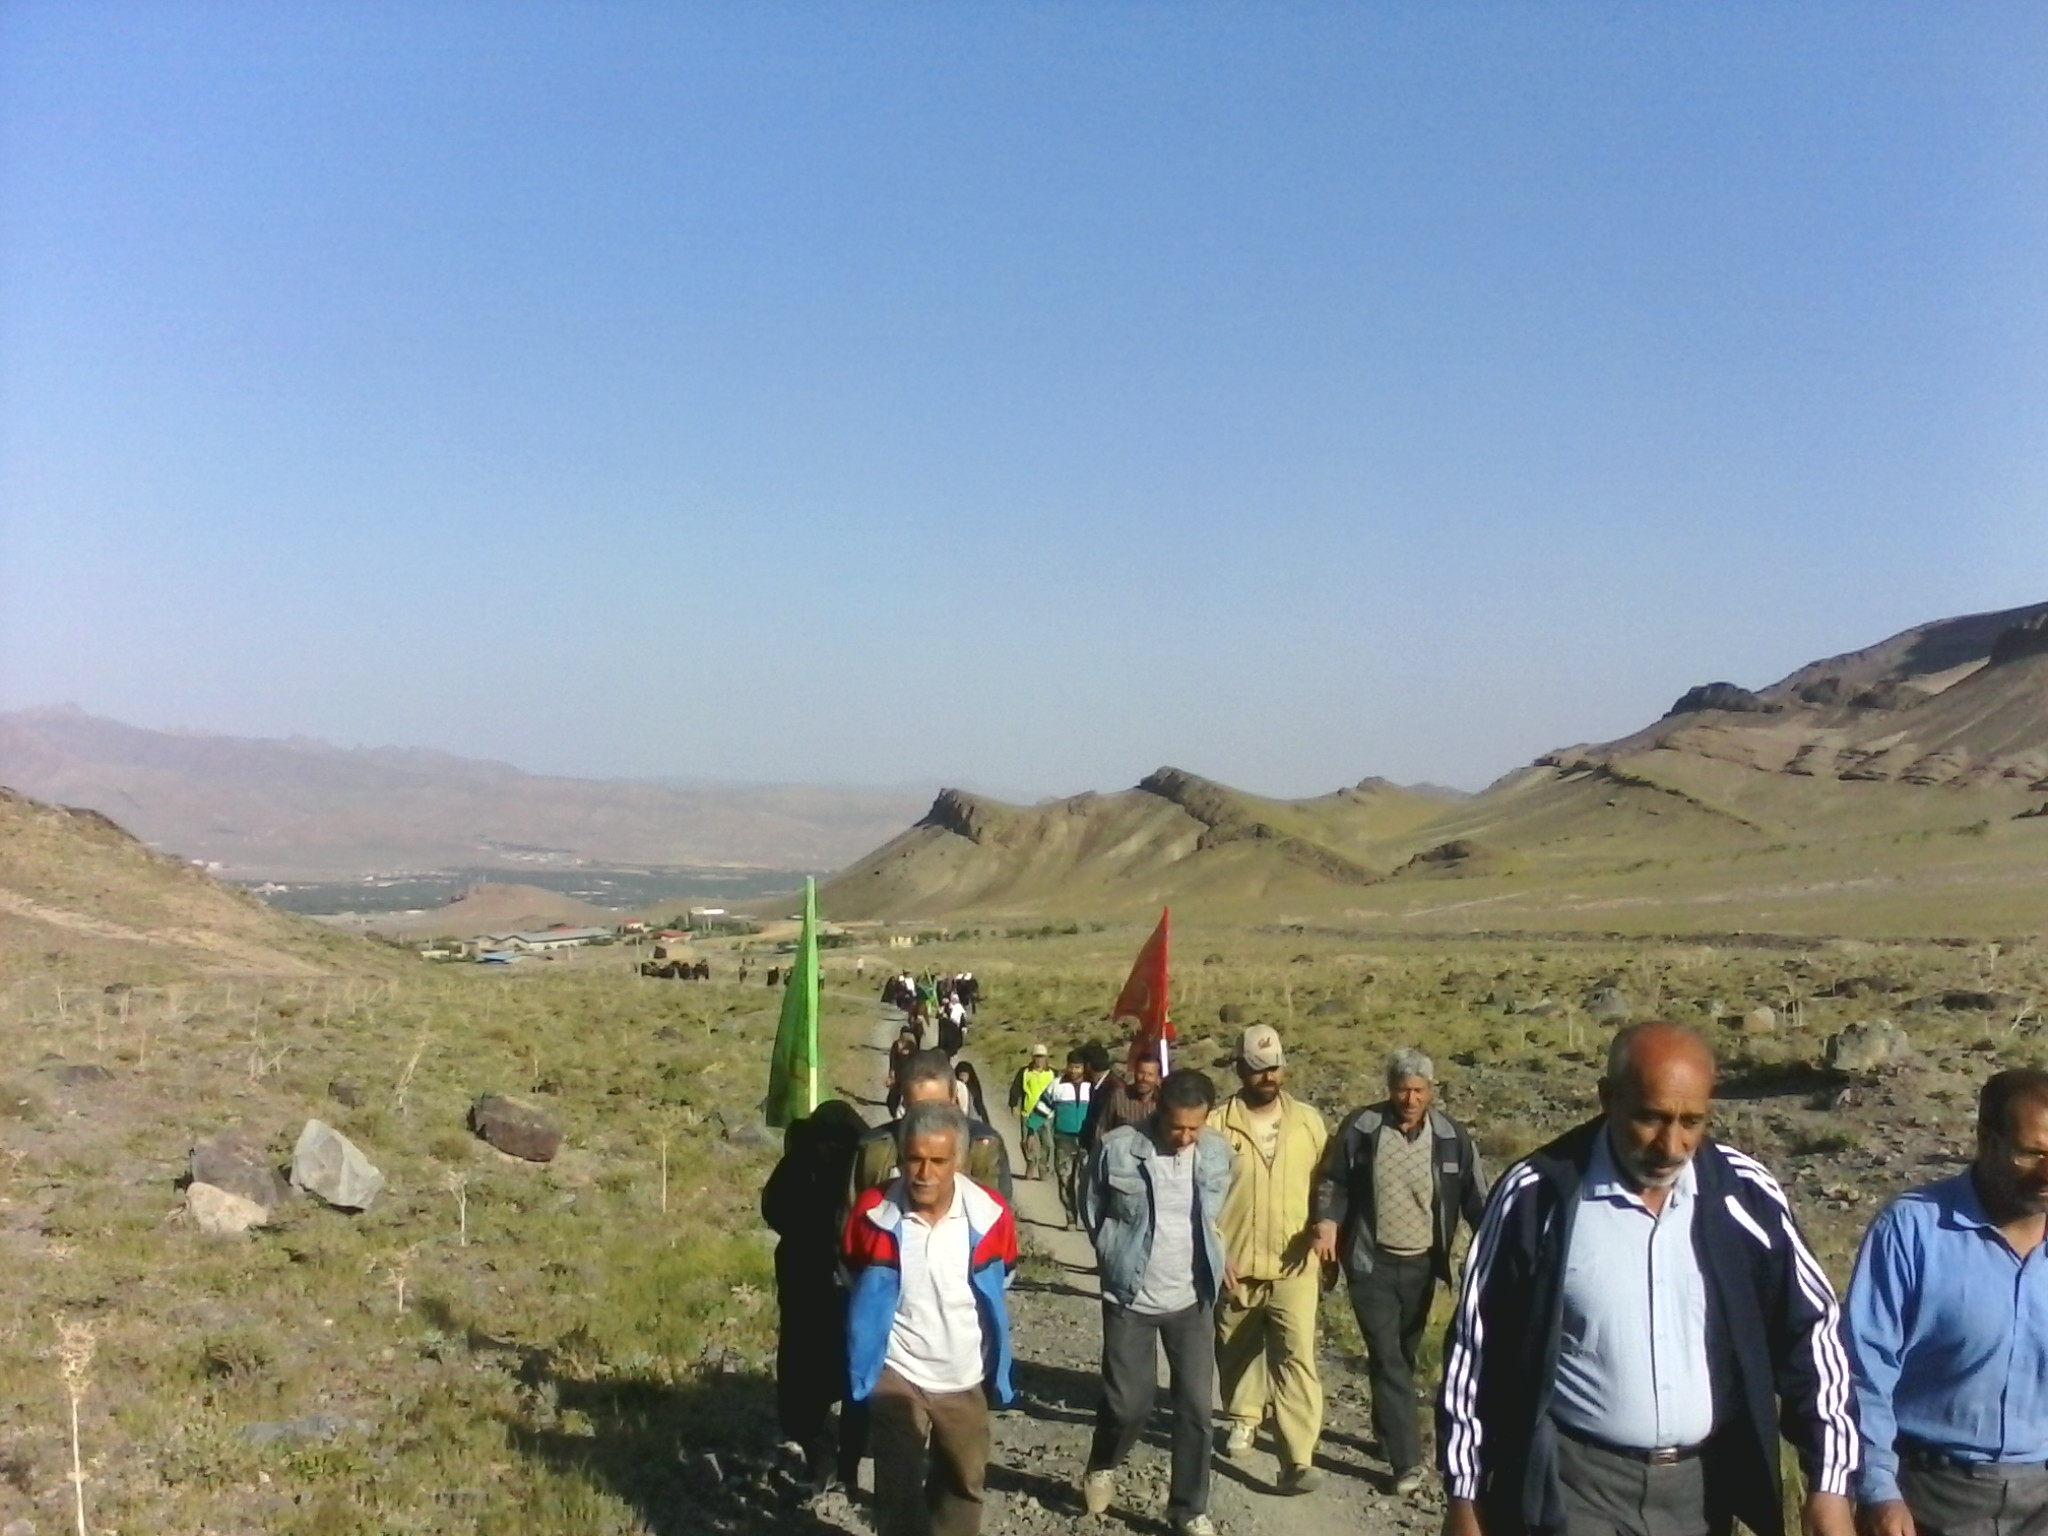 پیاده روی خانوادگی این هفته به مناسنت آزادسازی خرمشهر دره مرسک روستای کهک